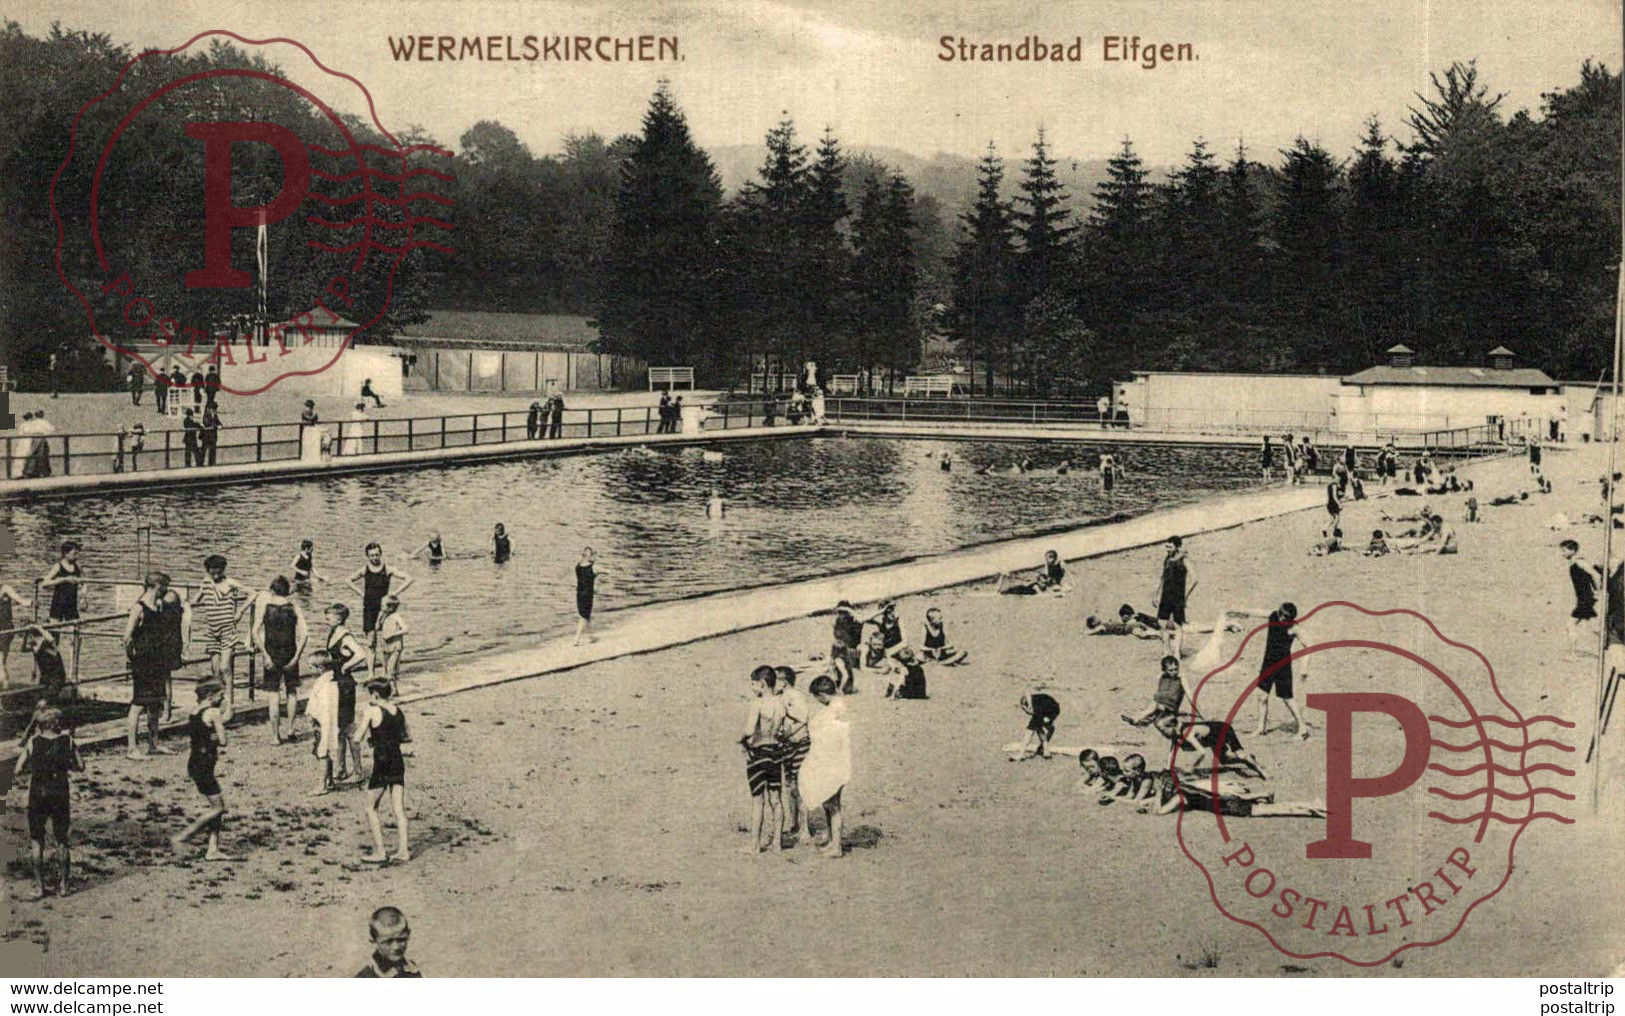 Wermelskirchen, Strandbad Eifgen. ALEMANIA // GERMANY // DEUTCHLAND. - Wermelskirchen